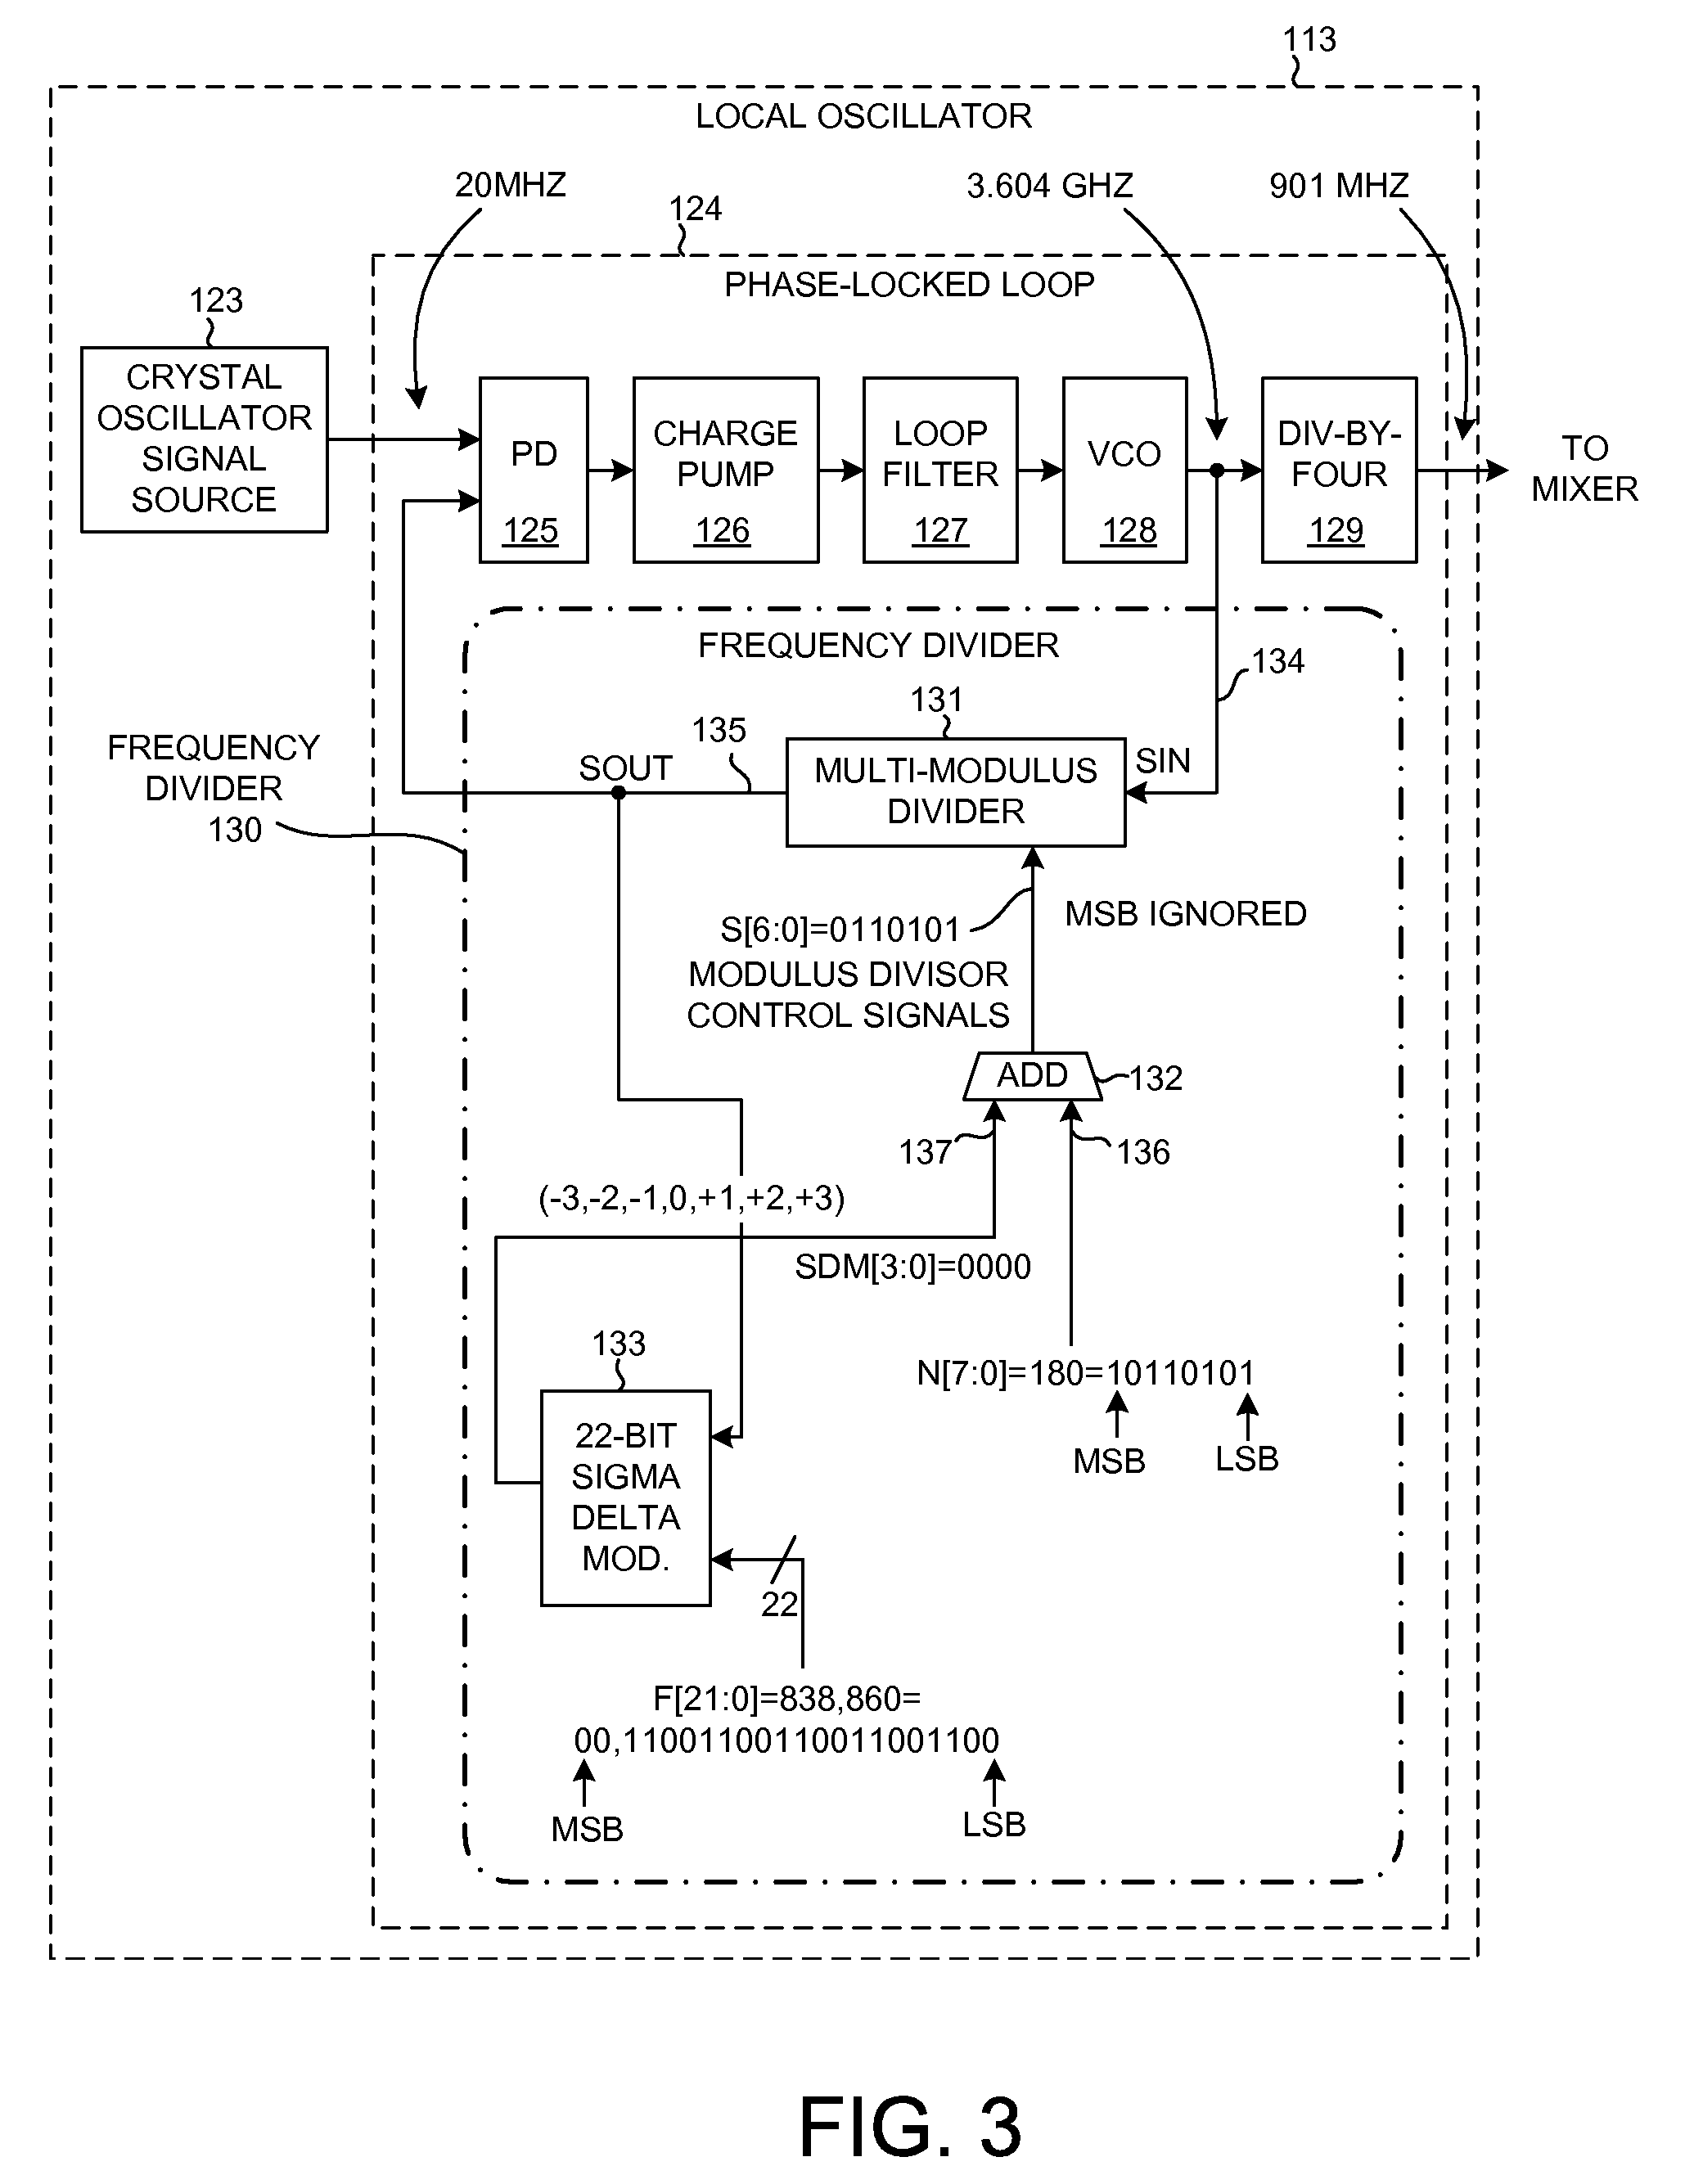 Multi-modulus divider retiming circuit